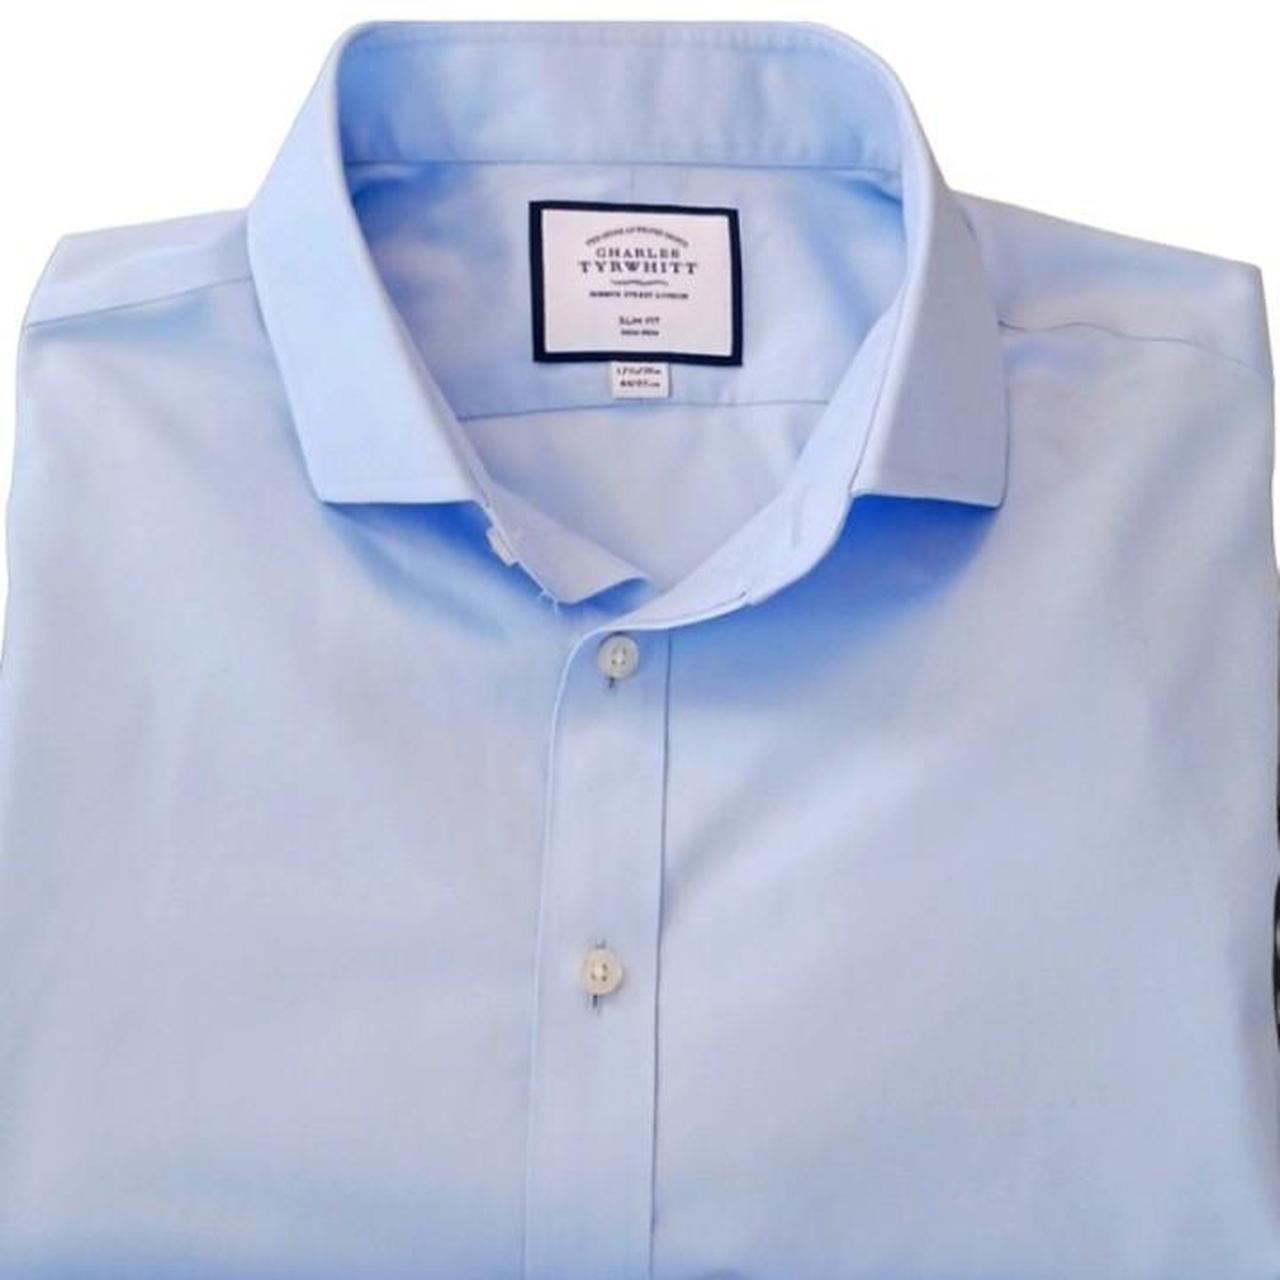 Charles Tyrwhitt Men's Blue Shirt